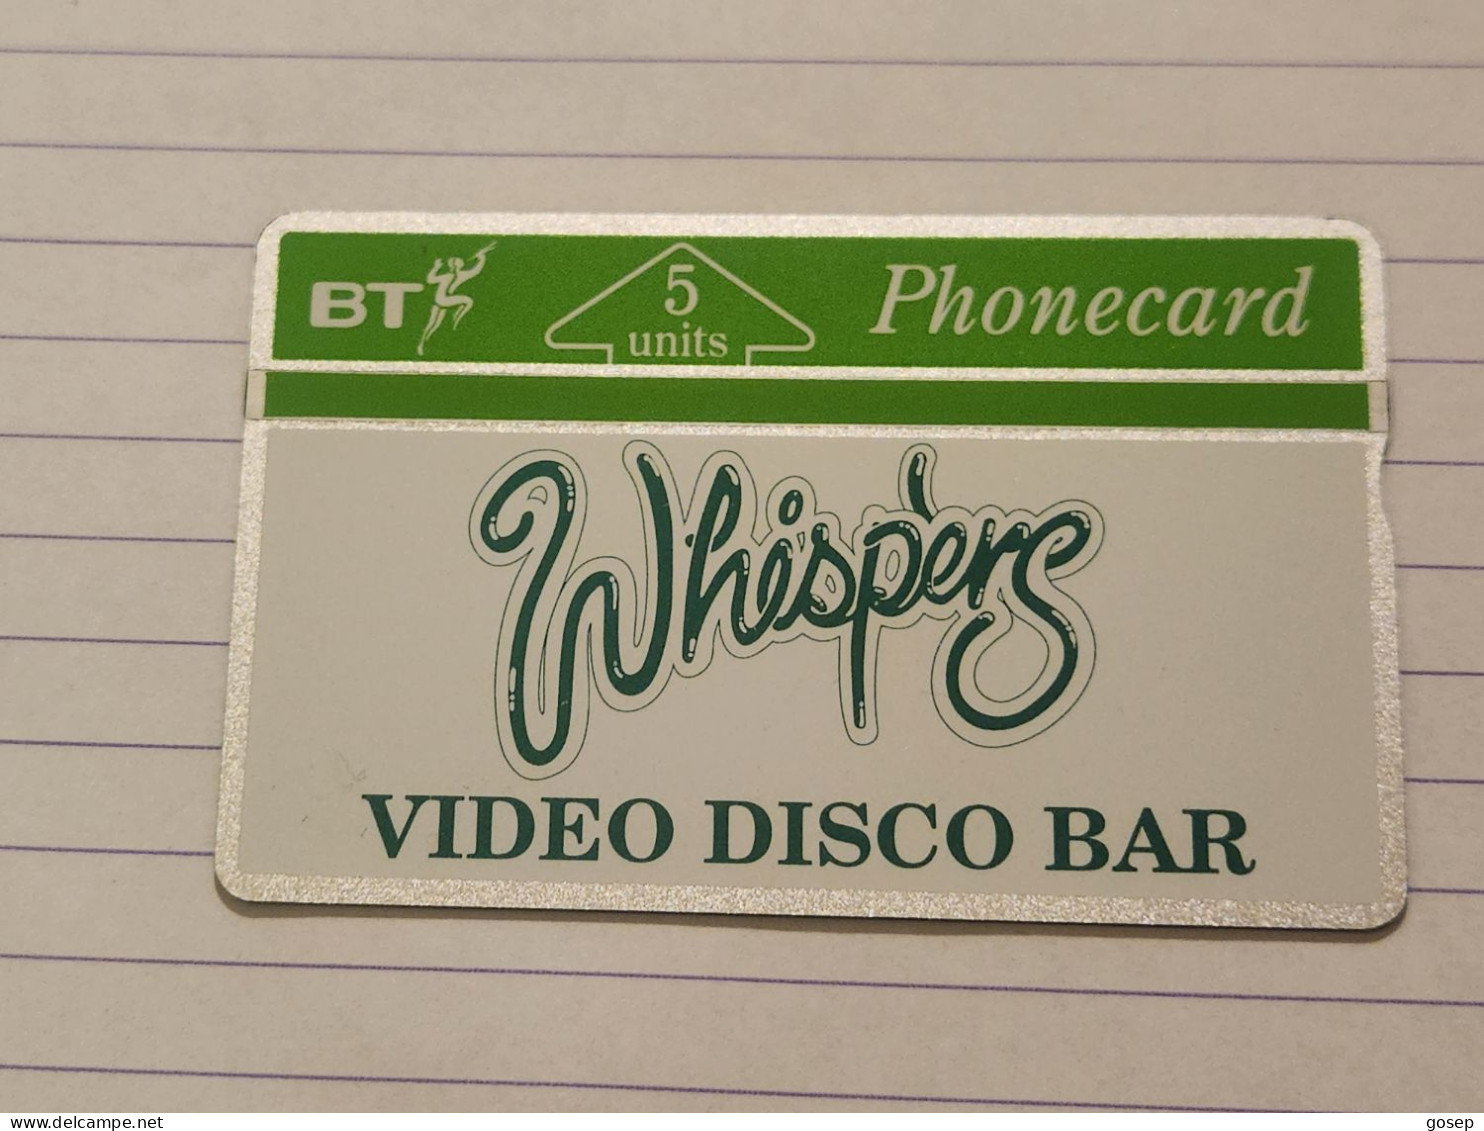 United Kingdom-(BTG-024)-whispers Video Disco Bar-(39)(5units)(201H10357)(tirage-500)(price Cataloge-8.00£mint) - BT Allgemeine